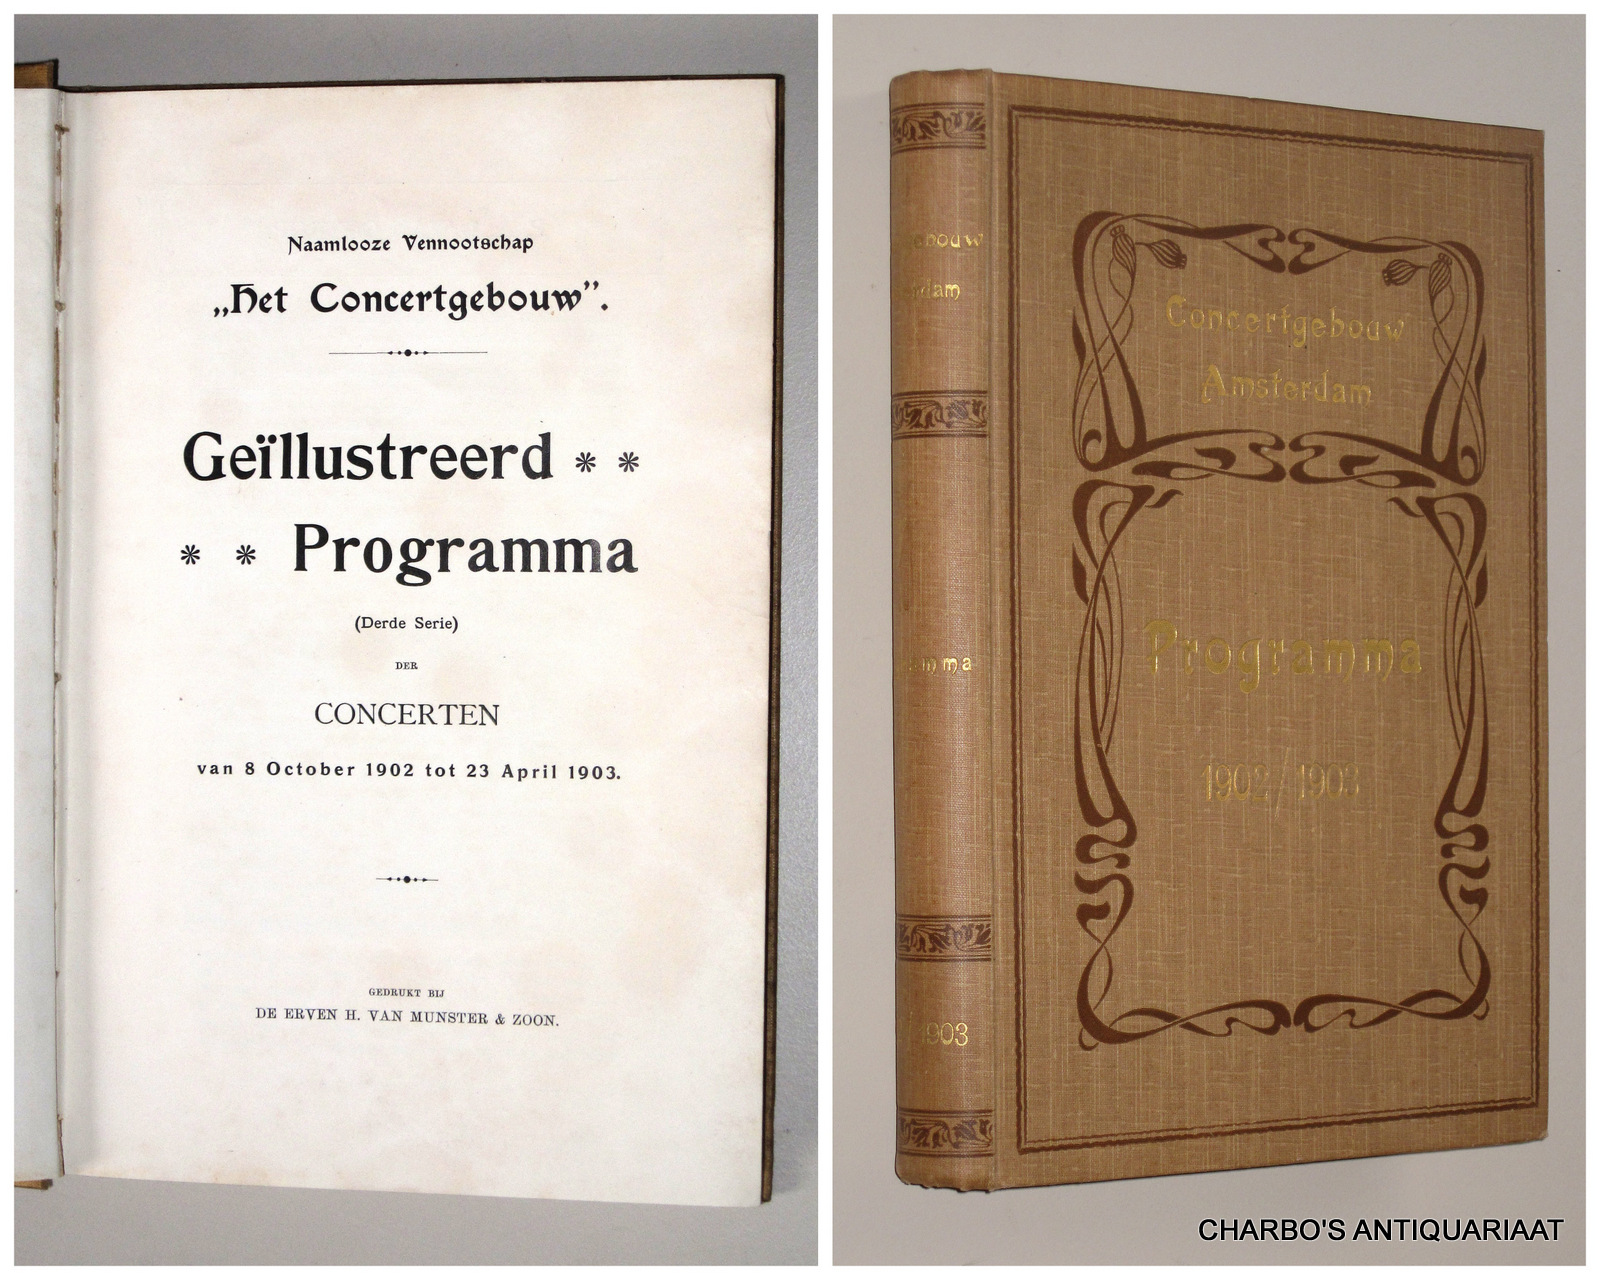 CONCERTGEBOUW, NAAMLOOZE VENNOOTSCHAP HET, -  Gellustreerd programma (derde serie) der concerten van 8 October 1902 tot 23 April 1903.